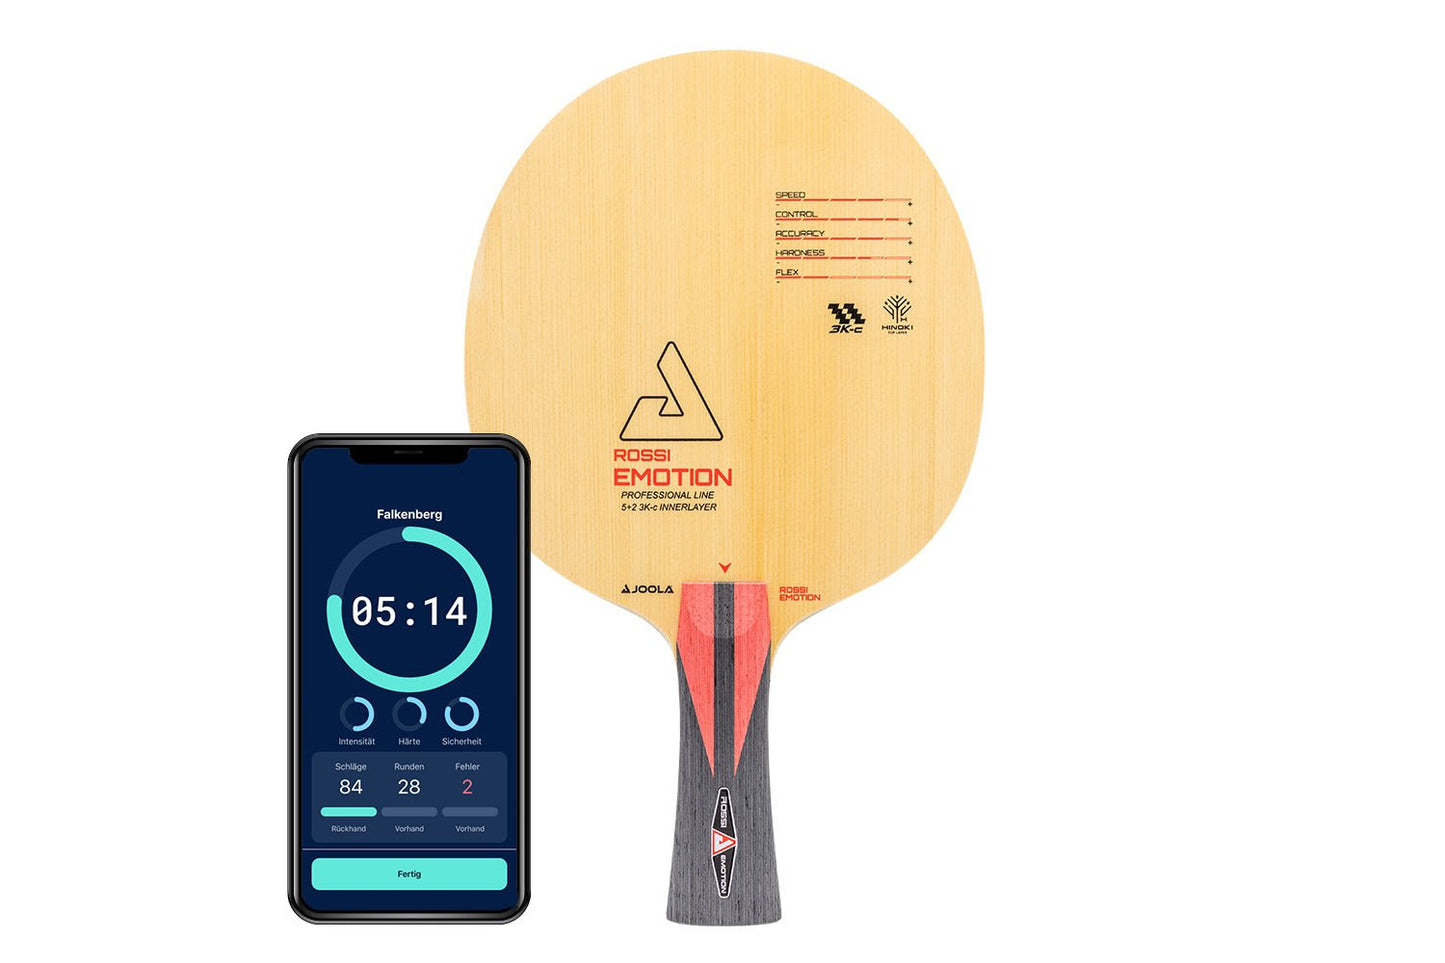 Joola Rossi Tischtennisschläger mit konkaven Griff und Smartphone zeigt Daten des Schlägers vor weißem Hintergrund